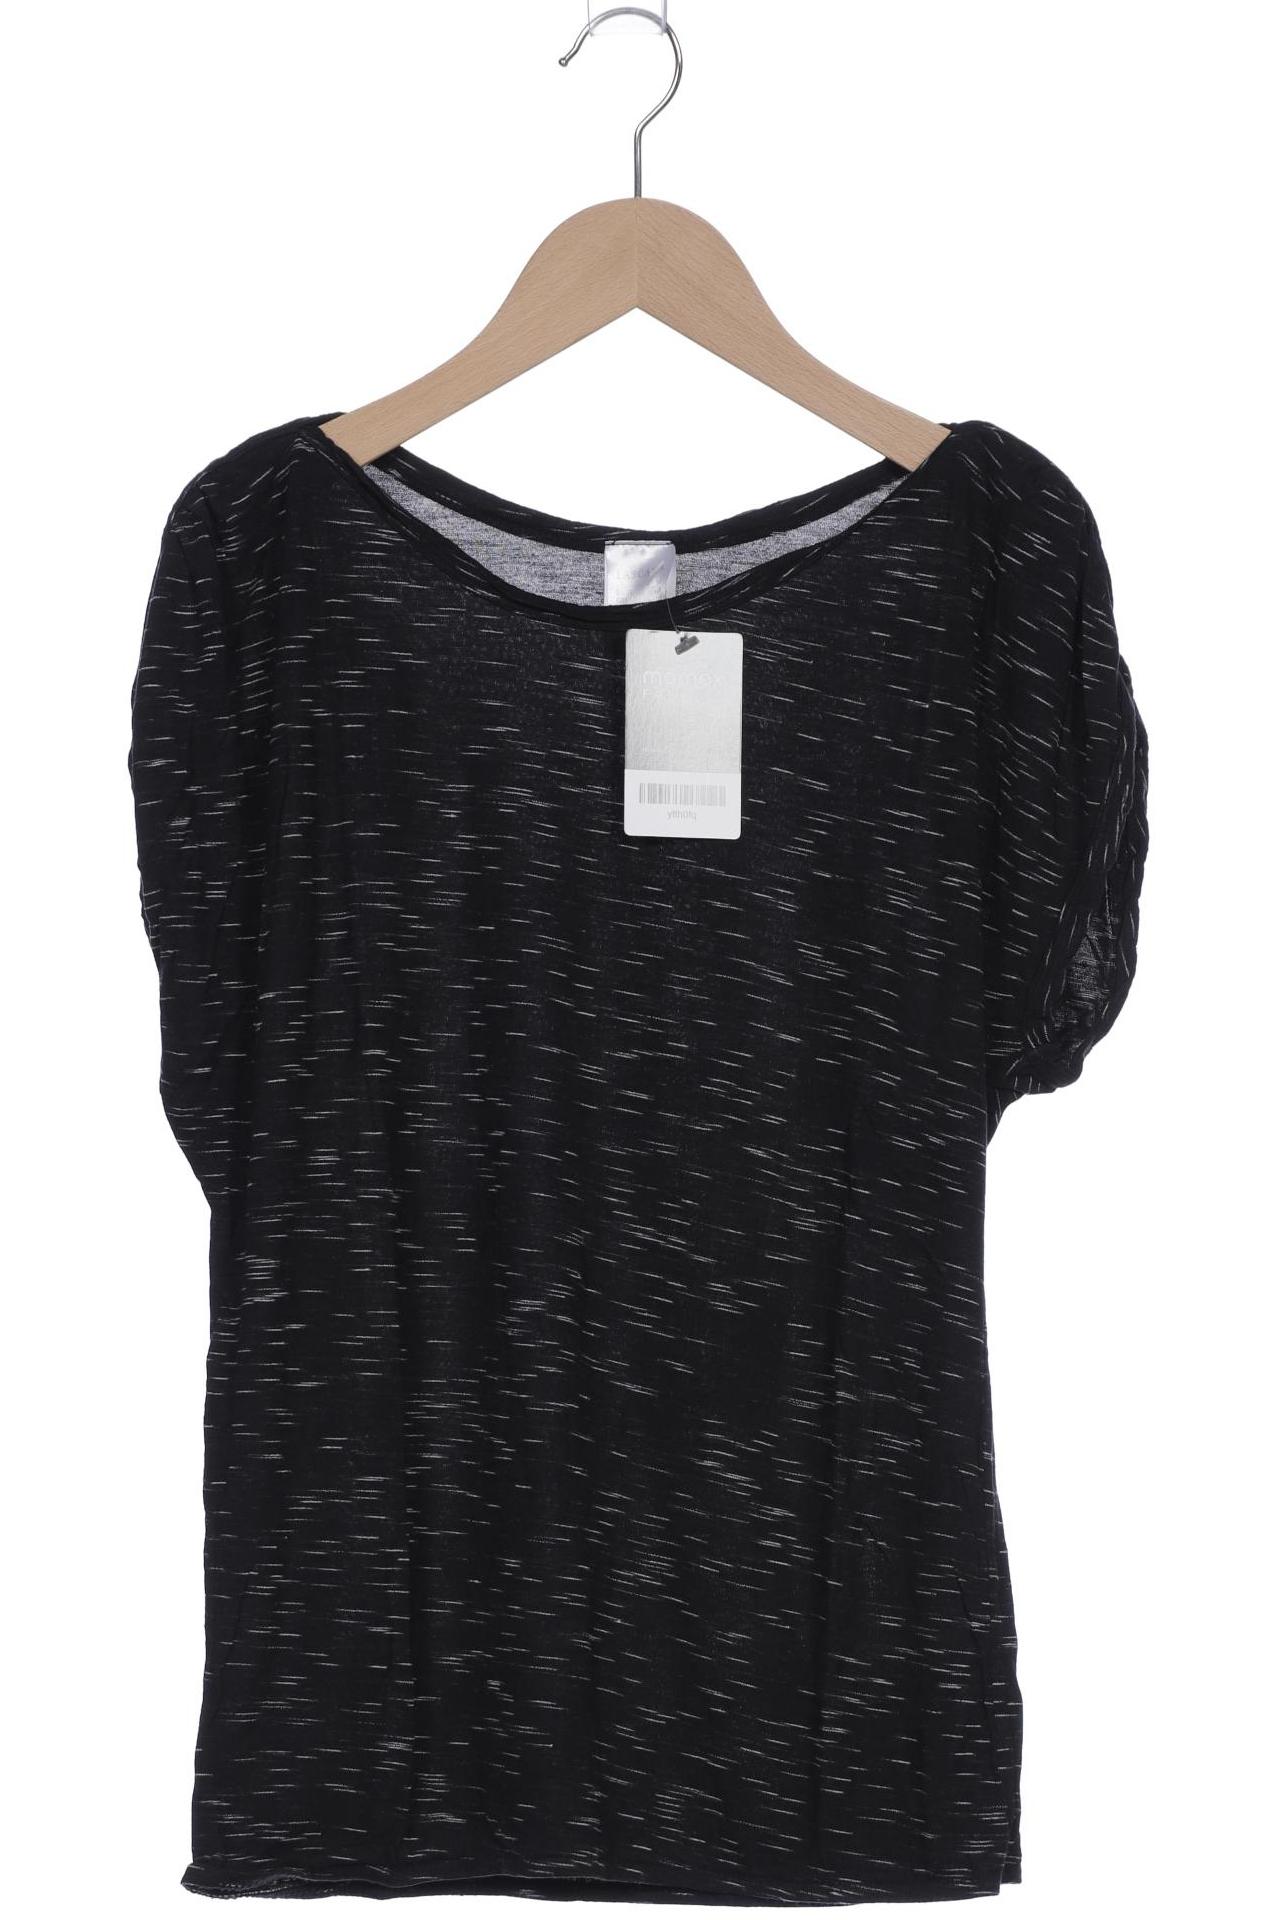 Lascana Damen T-Shirt, schwarz, Gr. 32 von Lascana